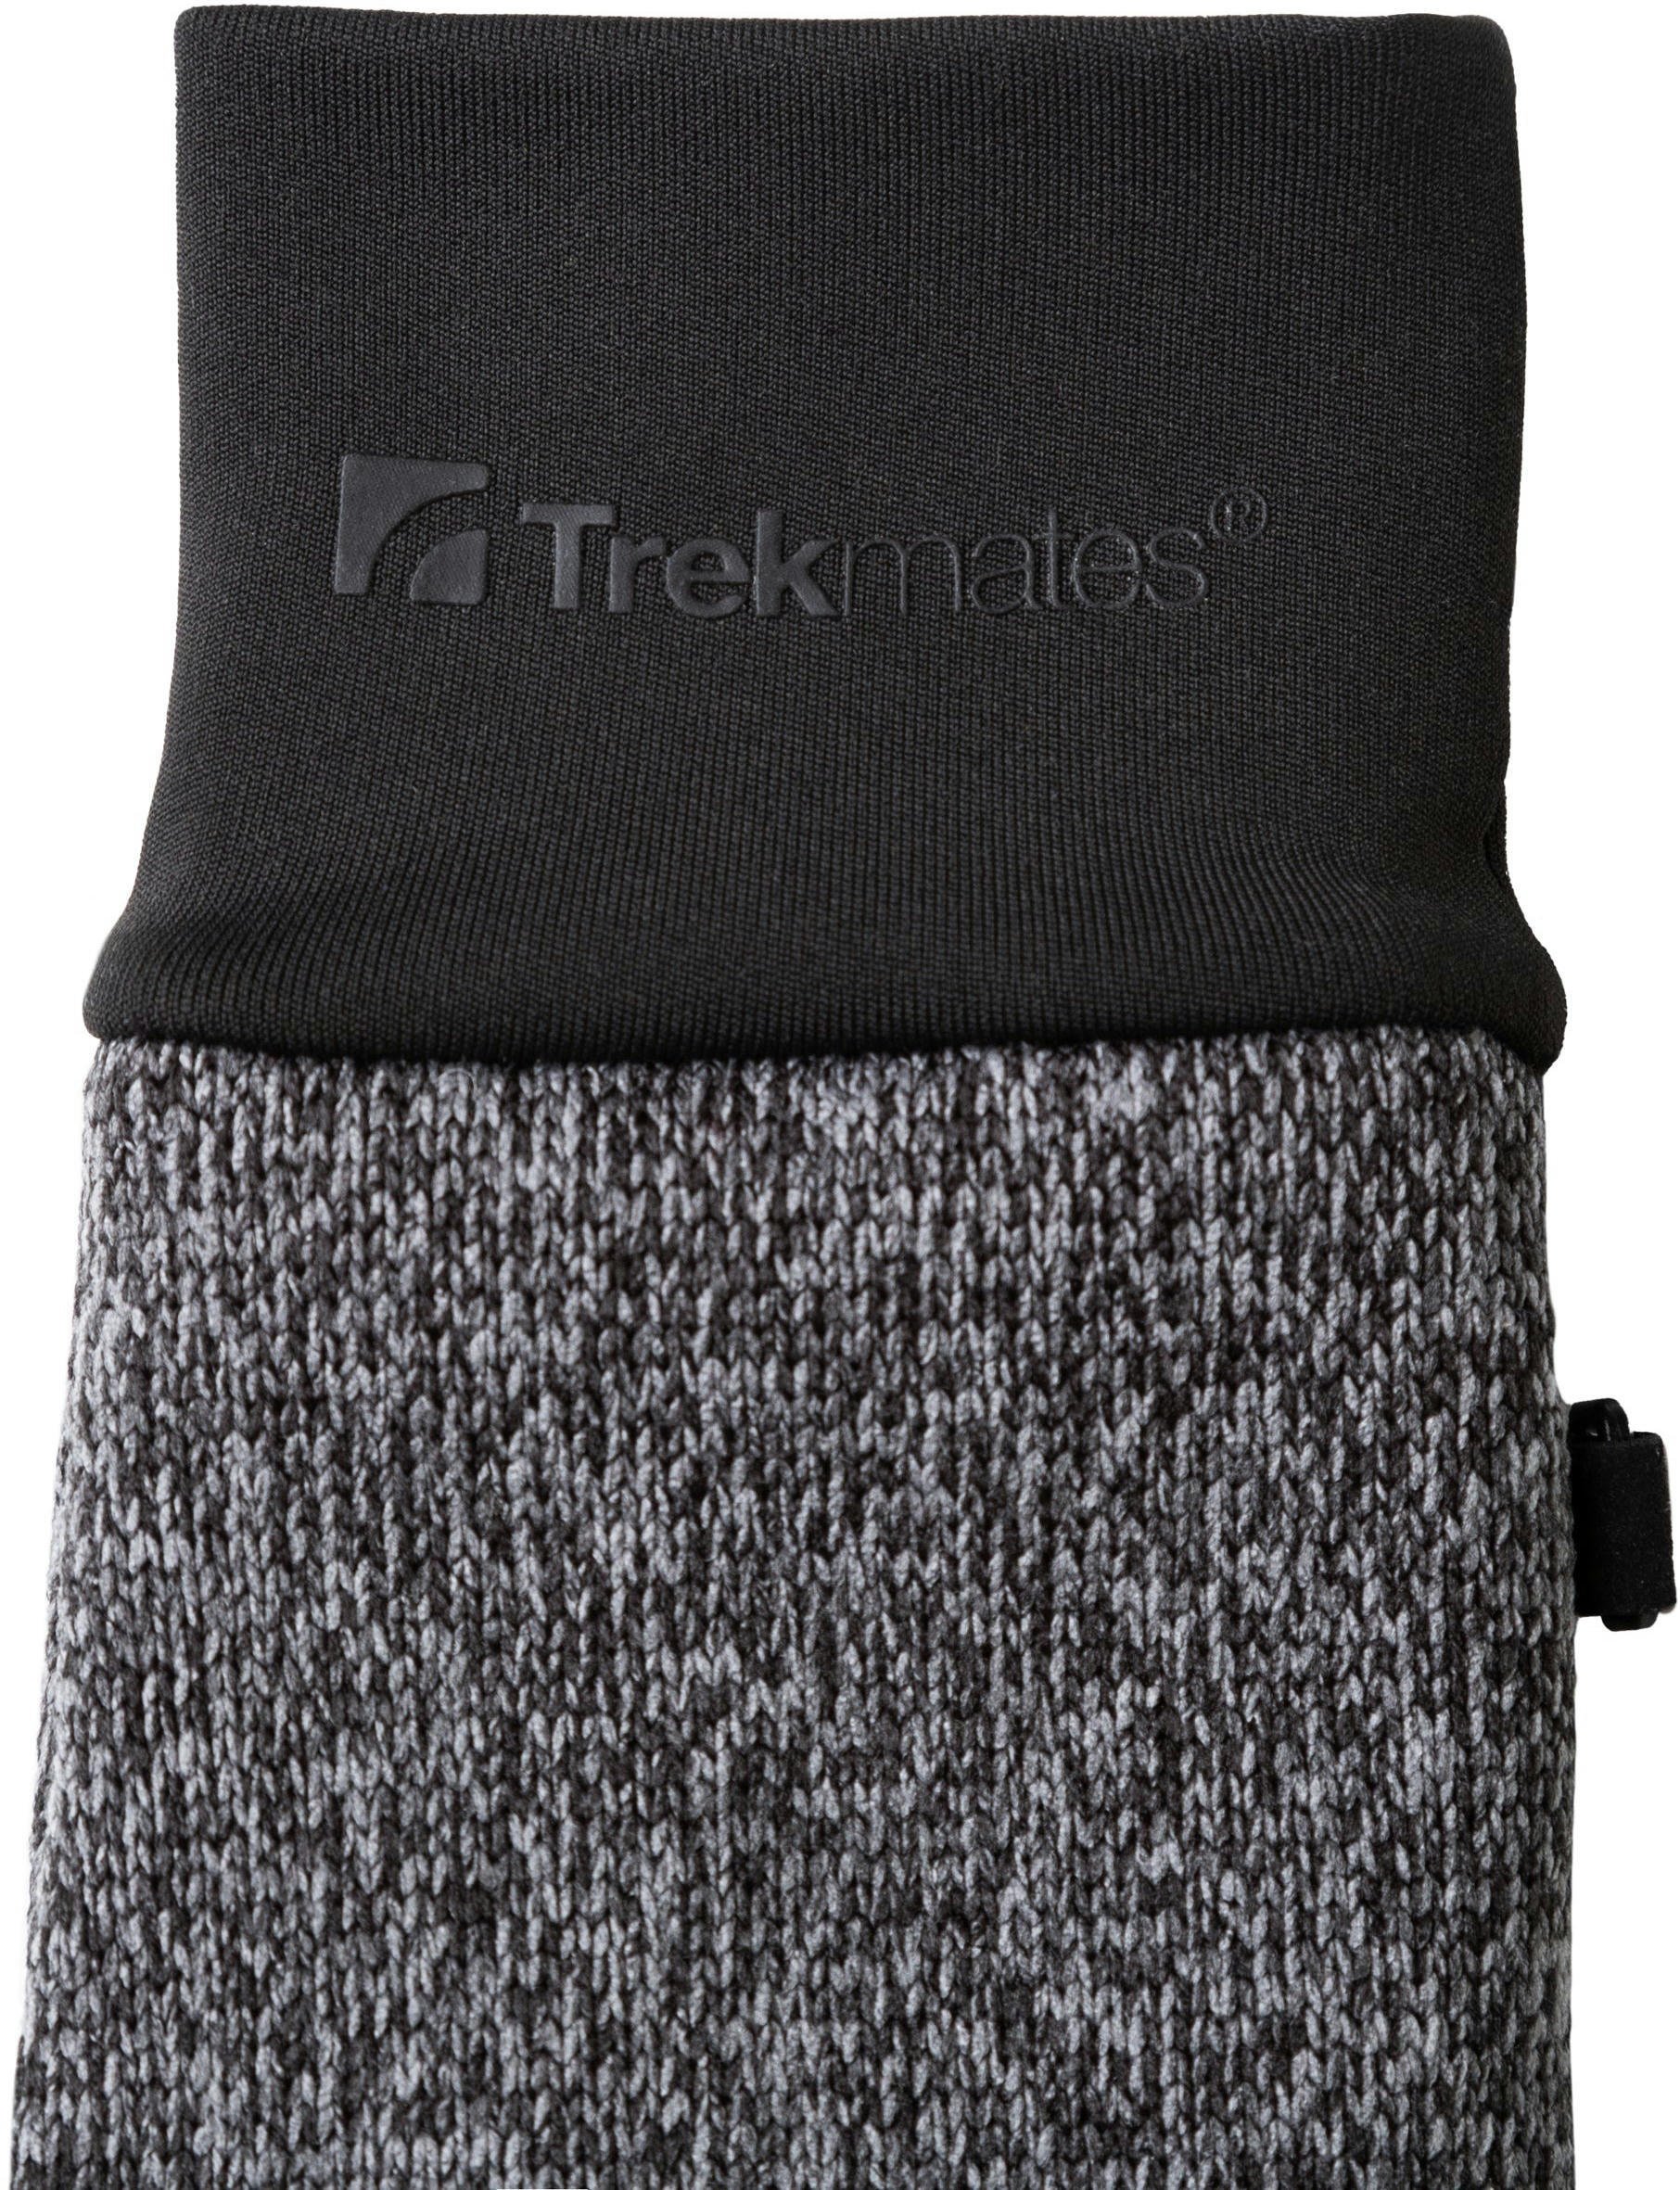 Рукавички Trekmates Tobermory Dry Glove TM-005673 dark grey marl – M – сірийфото3